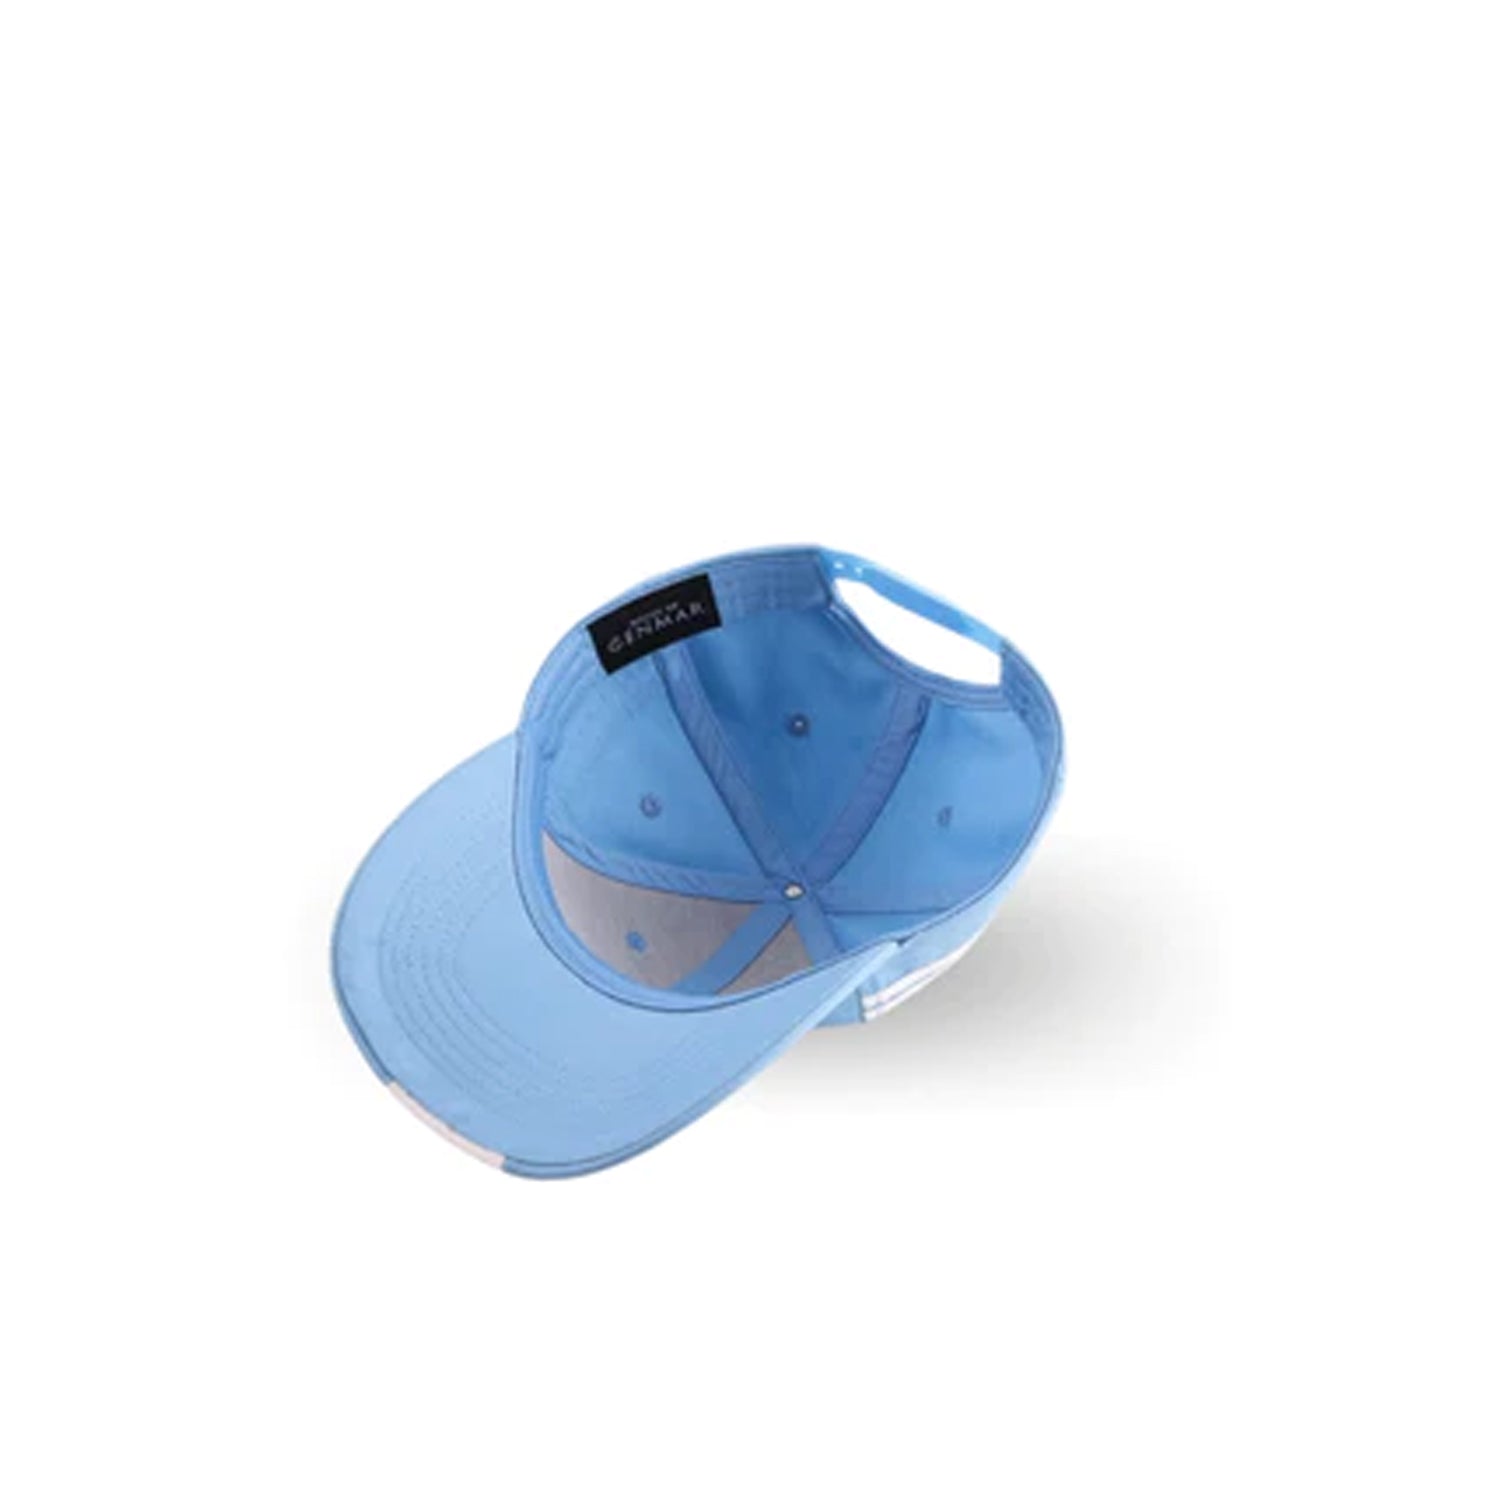 BABY BLUE BASEBALL CAP FROM HOUSE OF CENMAR